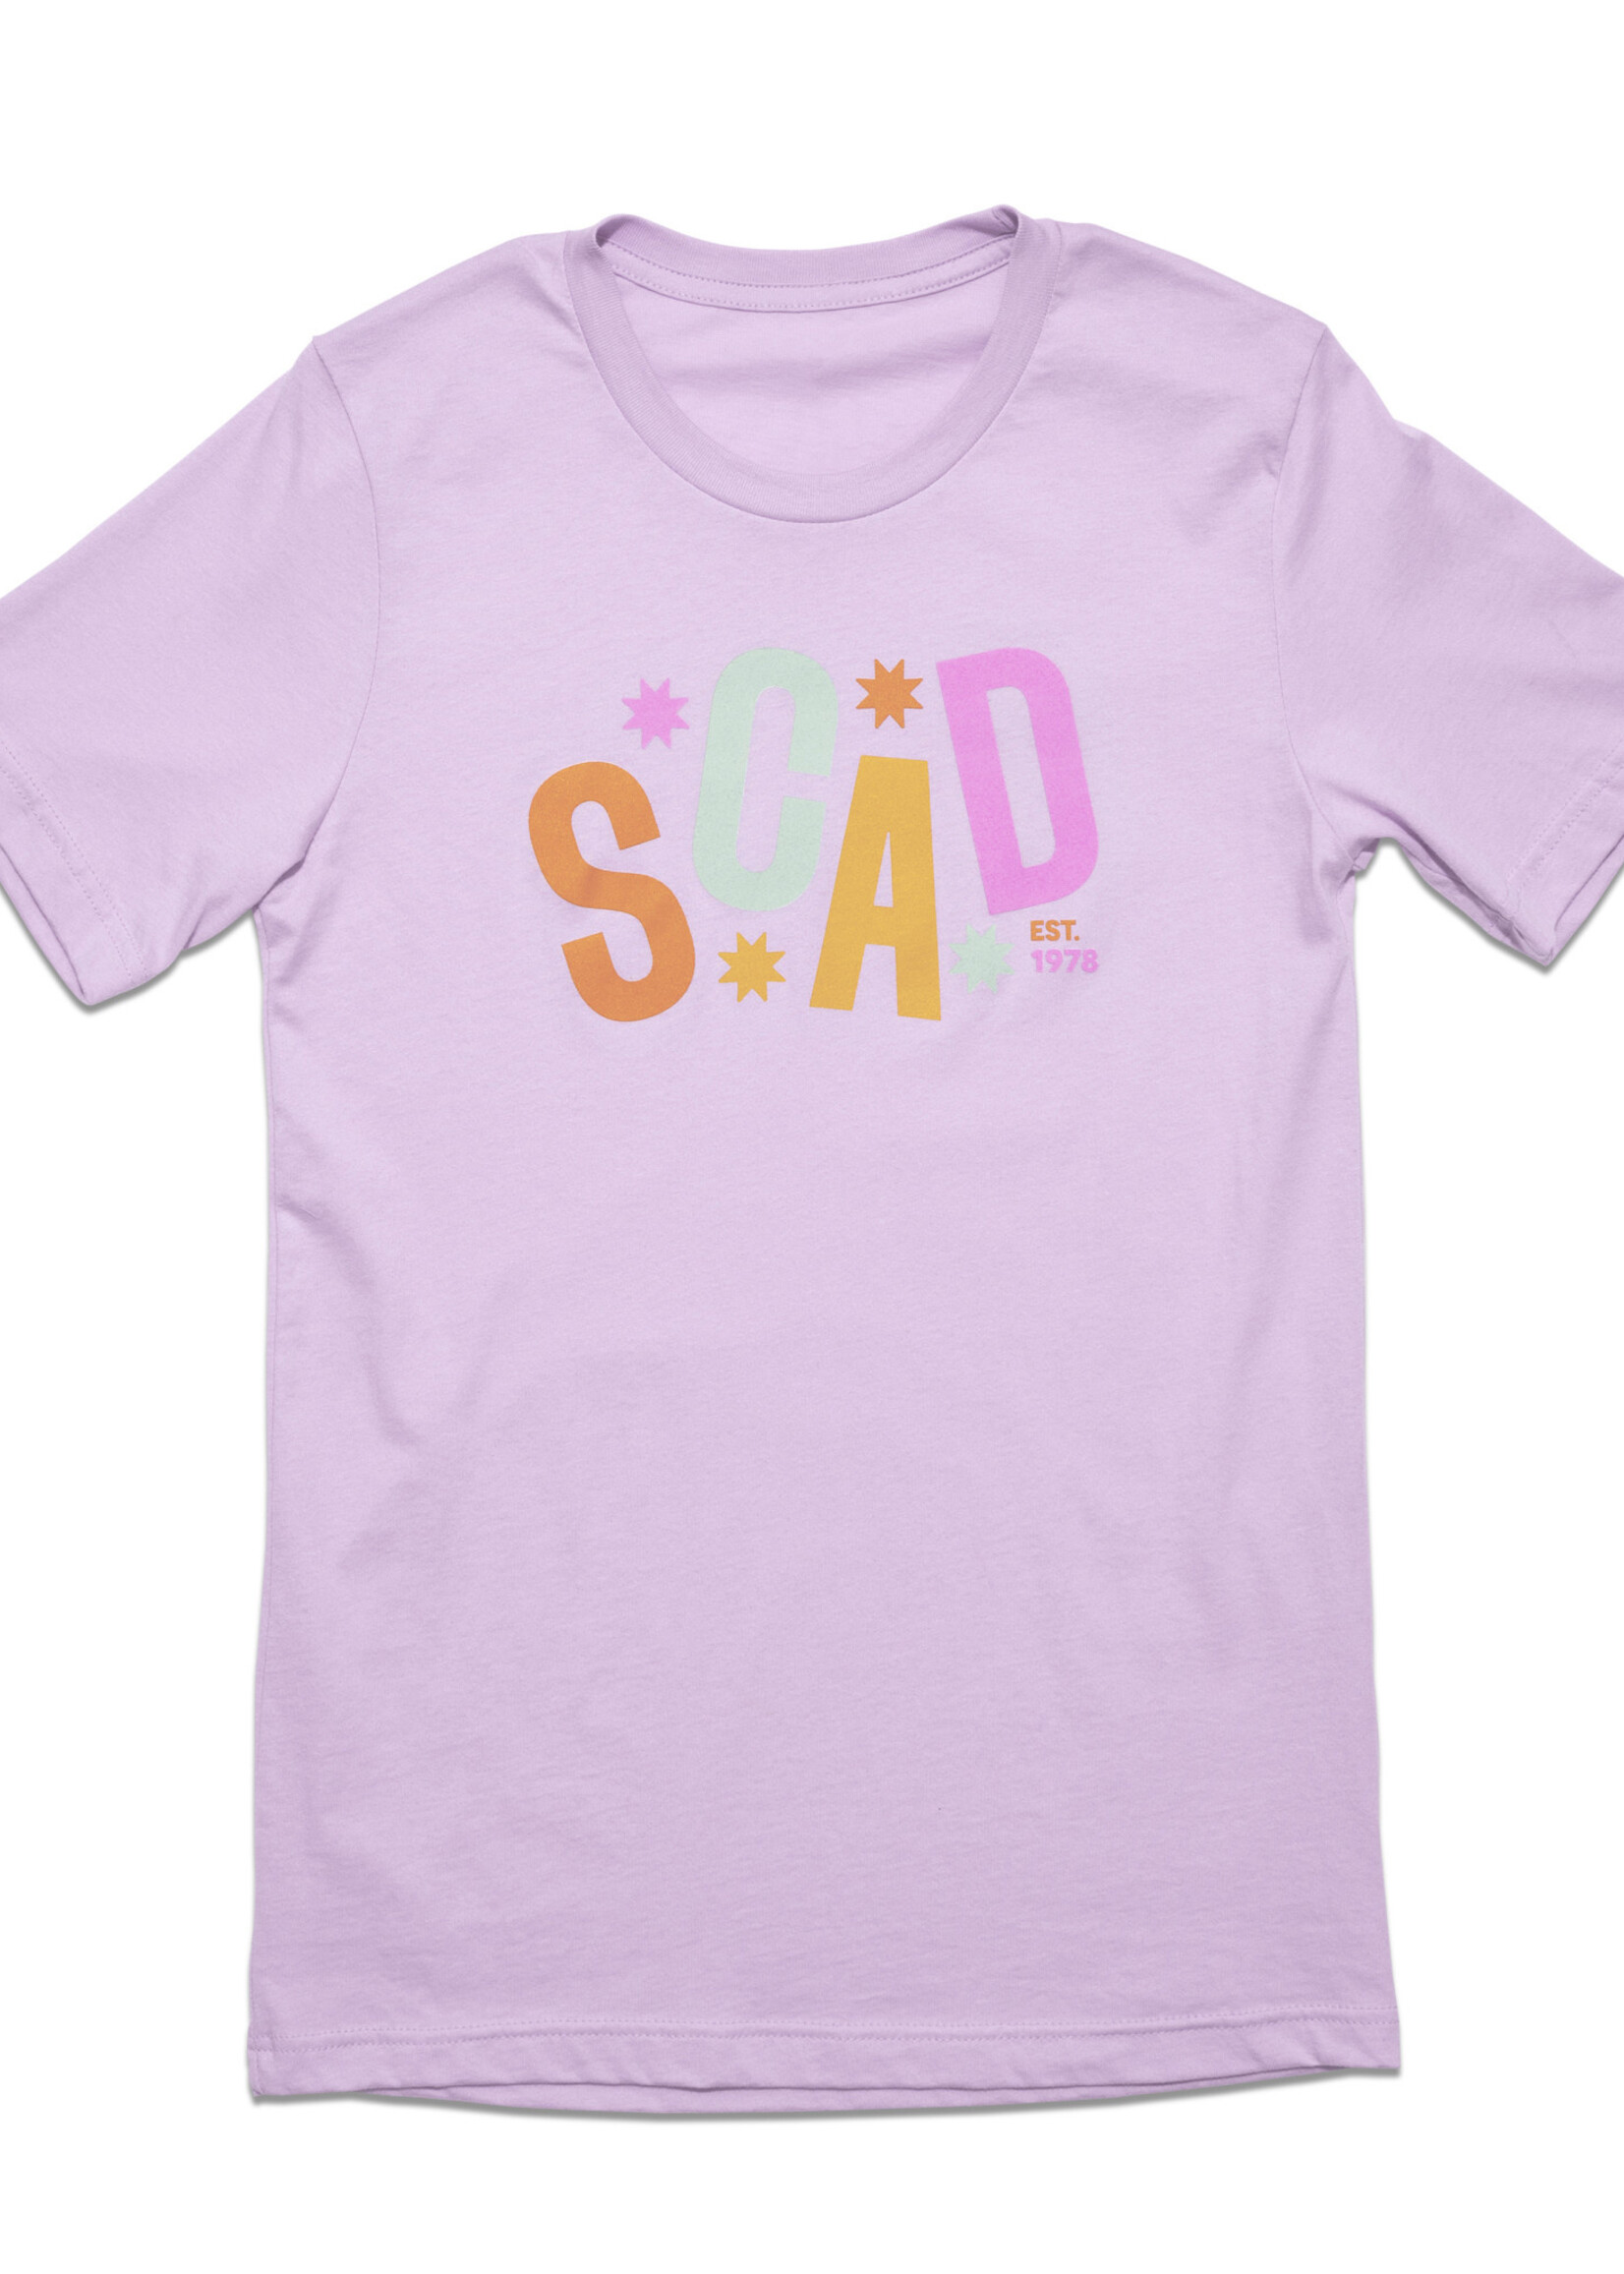 SCAD SCAD Starburst T-Shirt